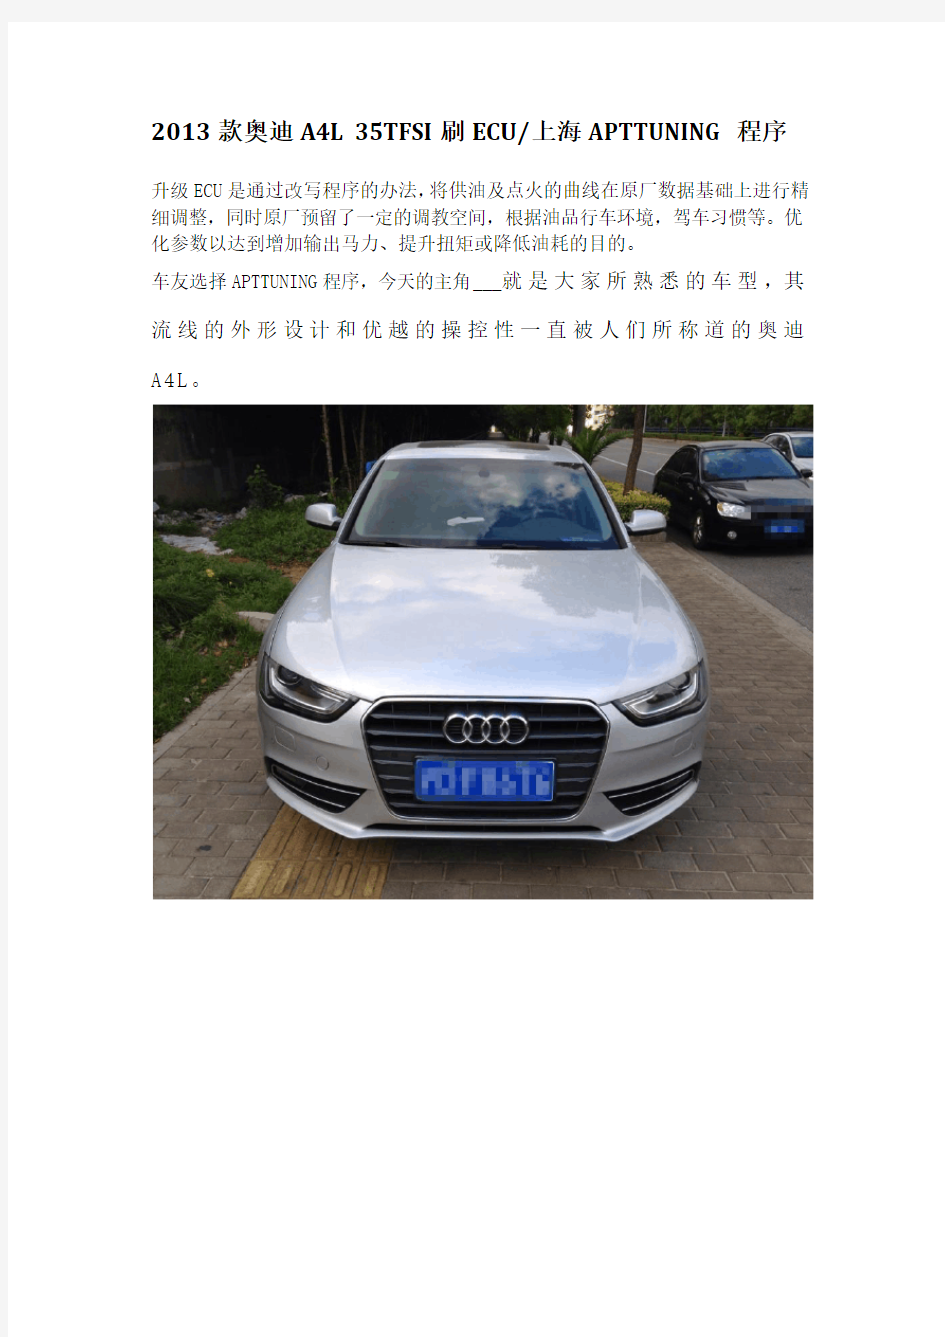 2013款奥迪A4L 35TFSI刷ECU上海APTTUNING程序